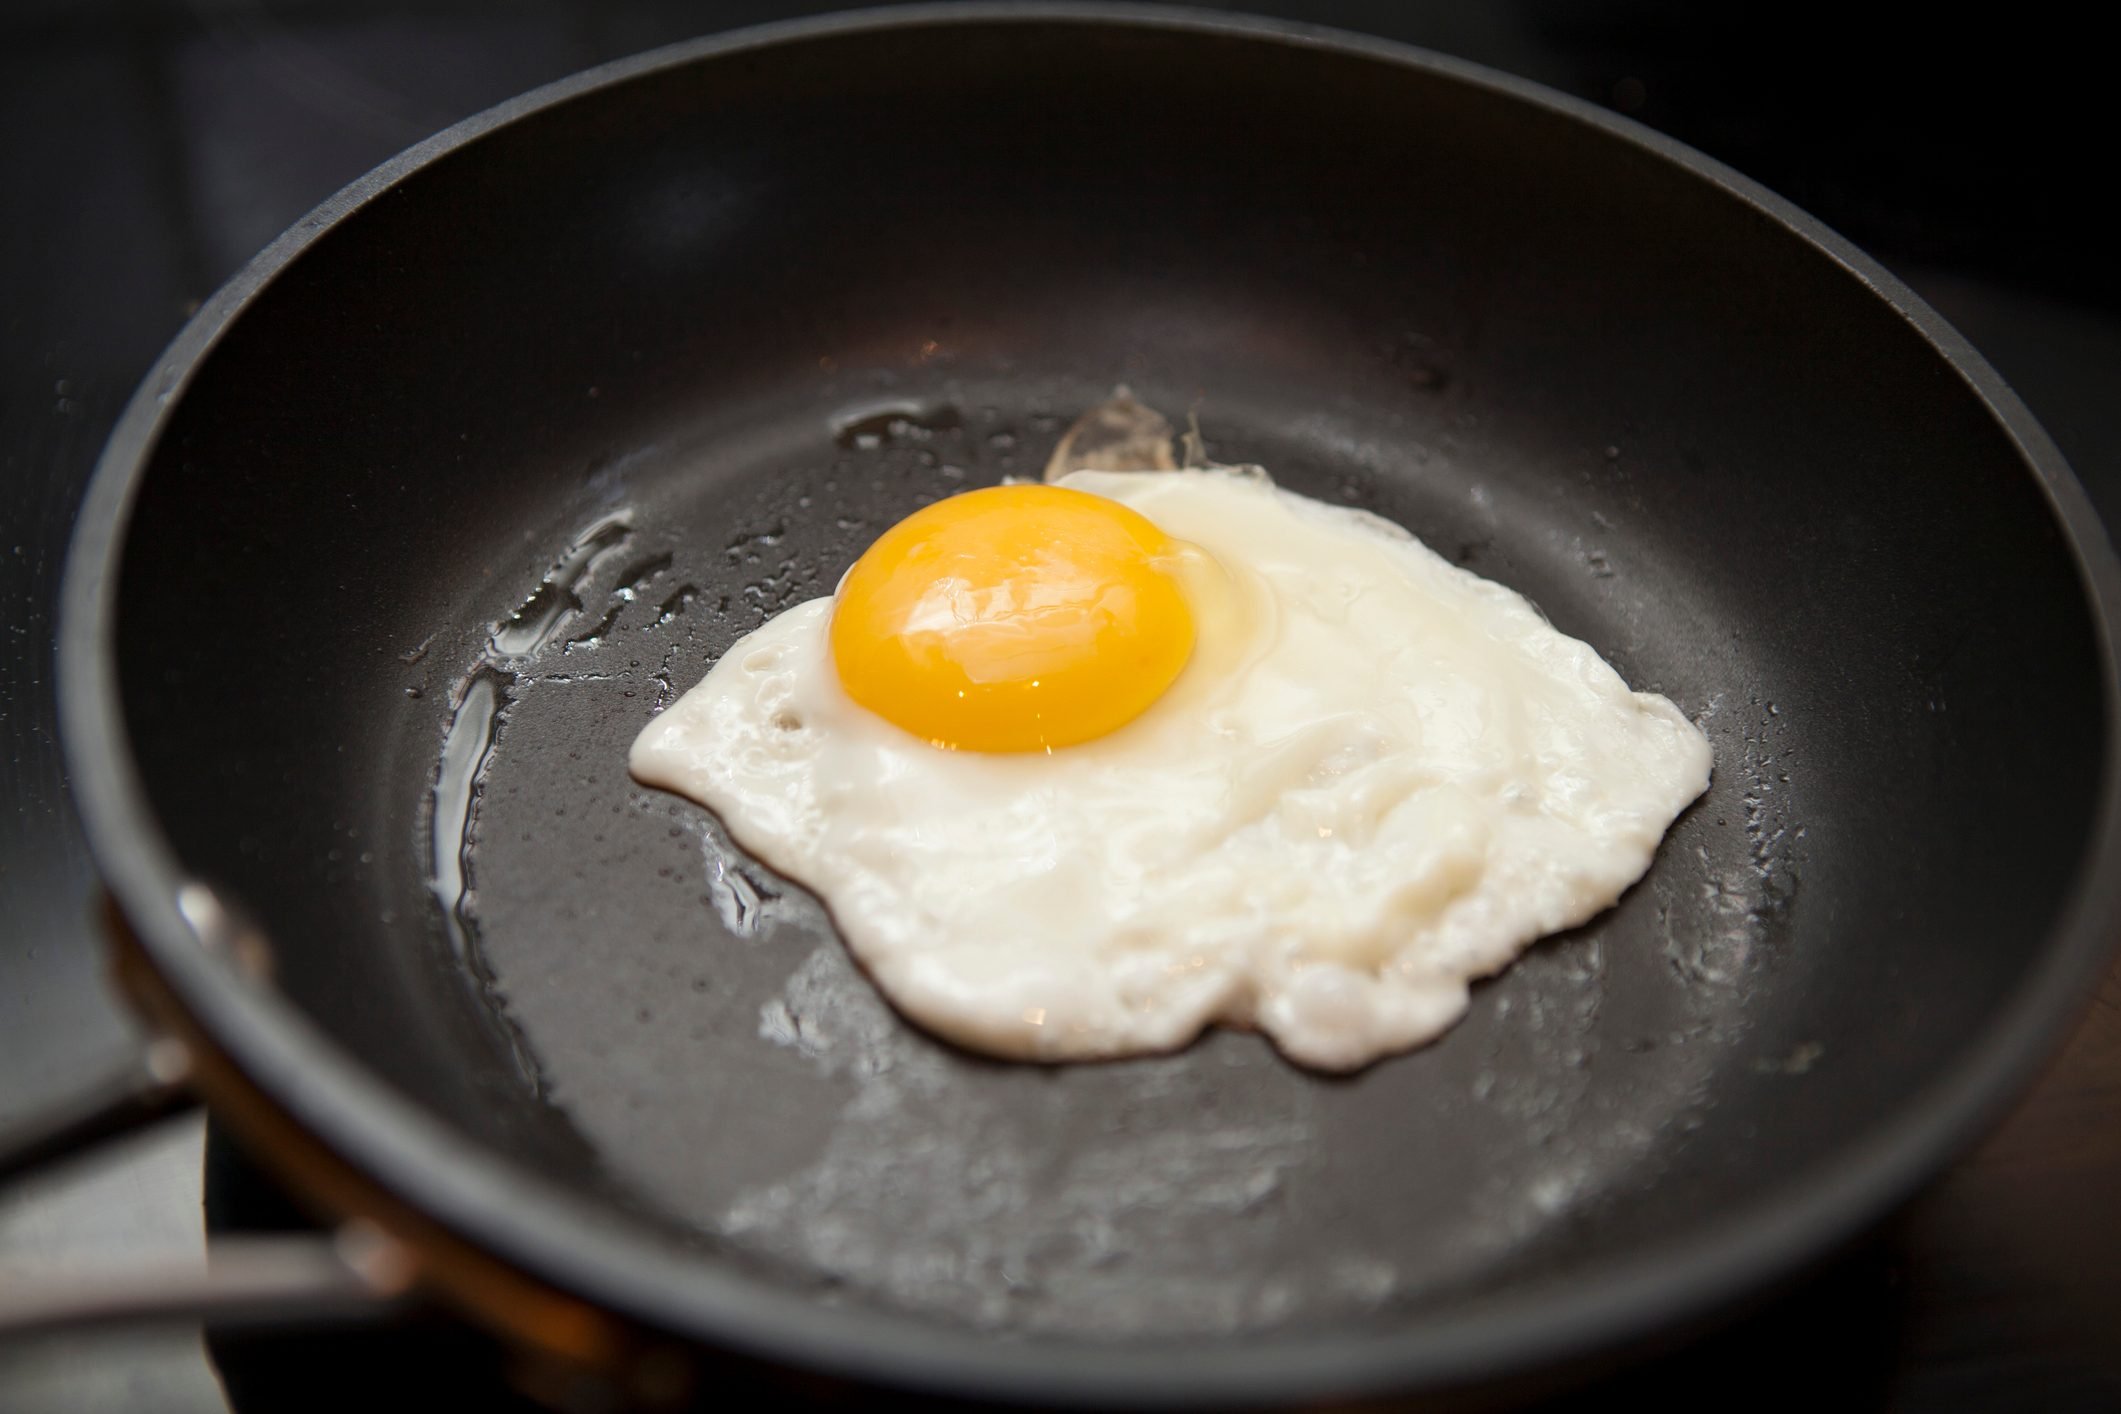 Frying Pan, Non-stick Egg Frying Pan, For Eggs, Steaks, Ham